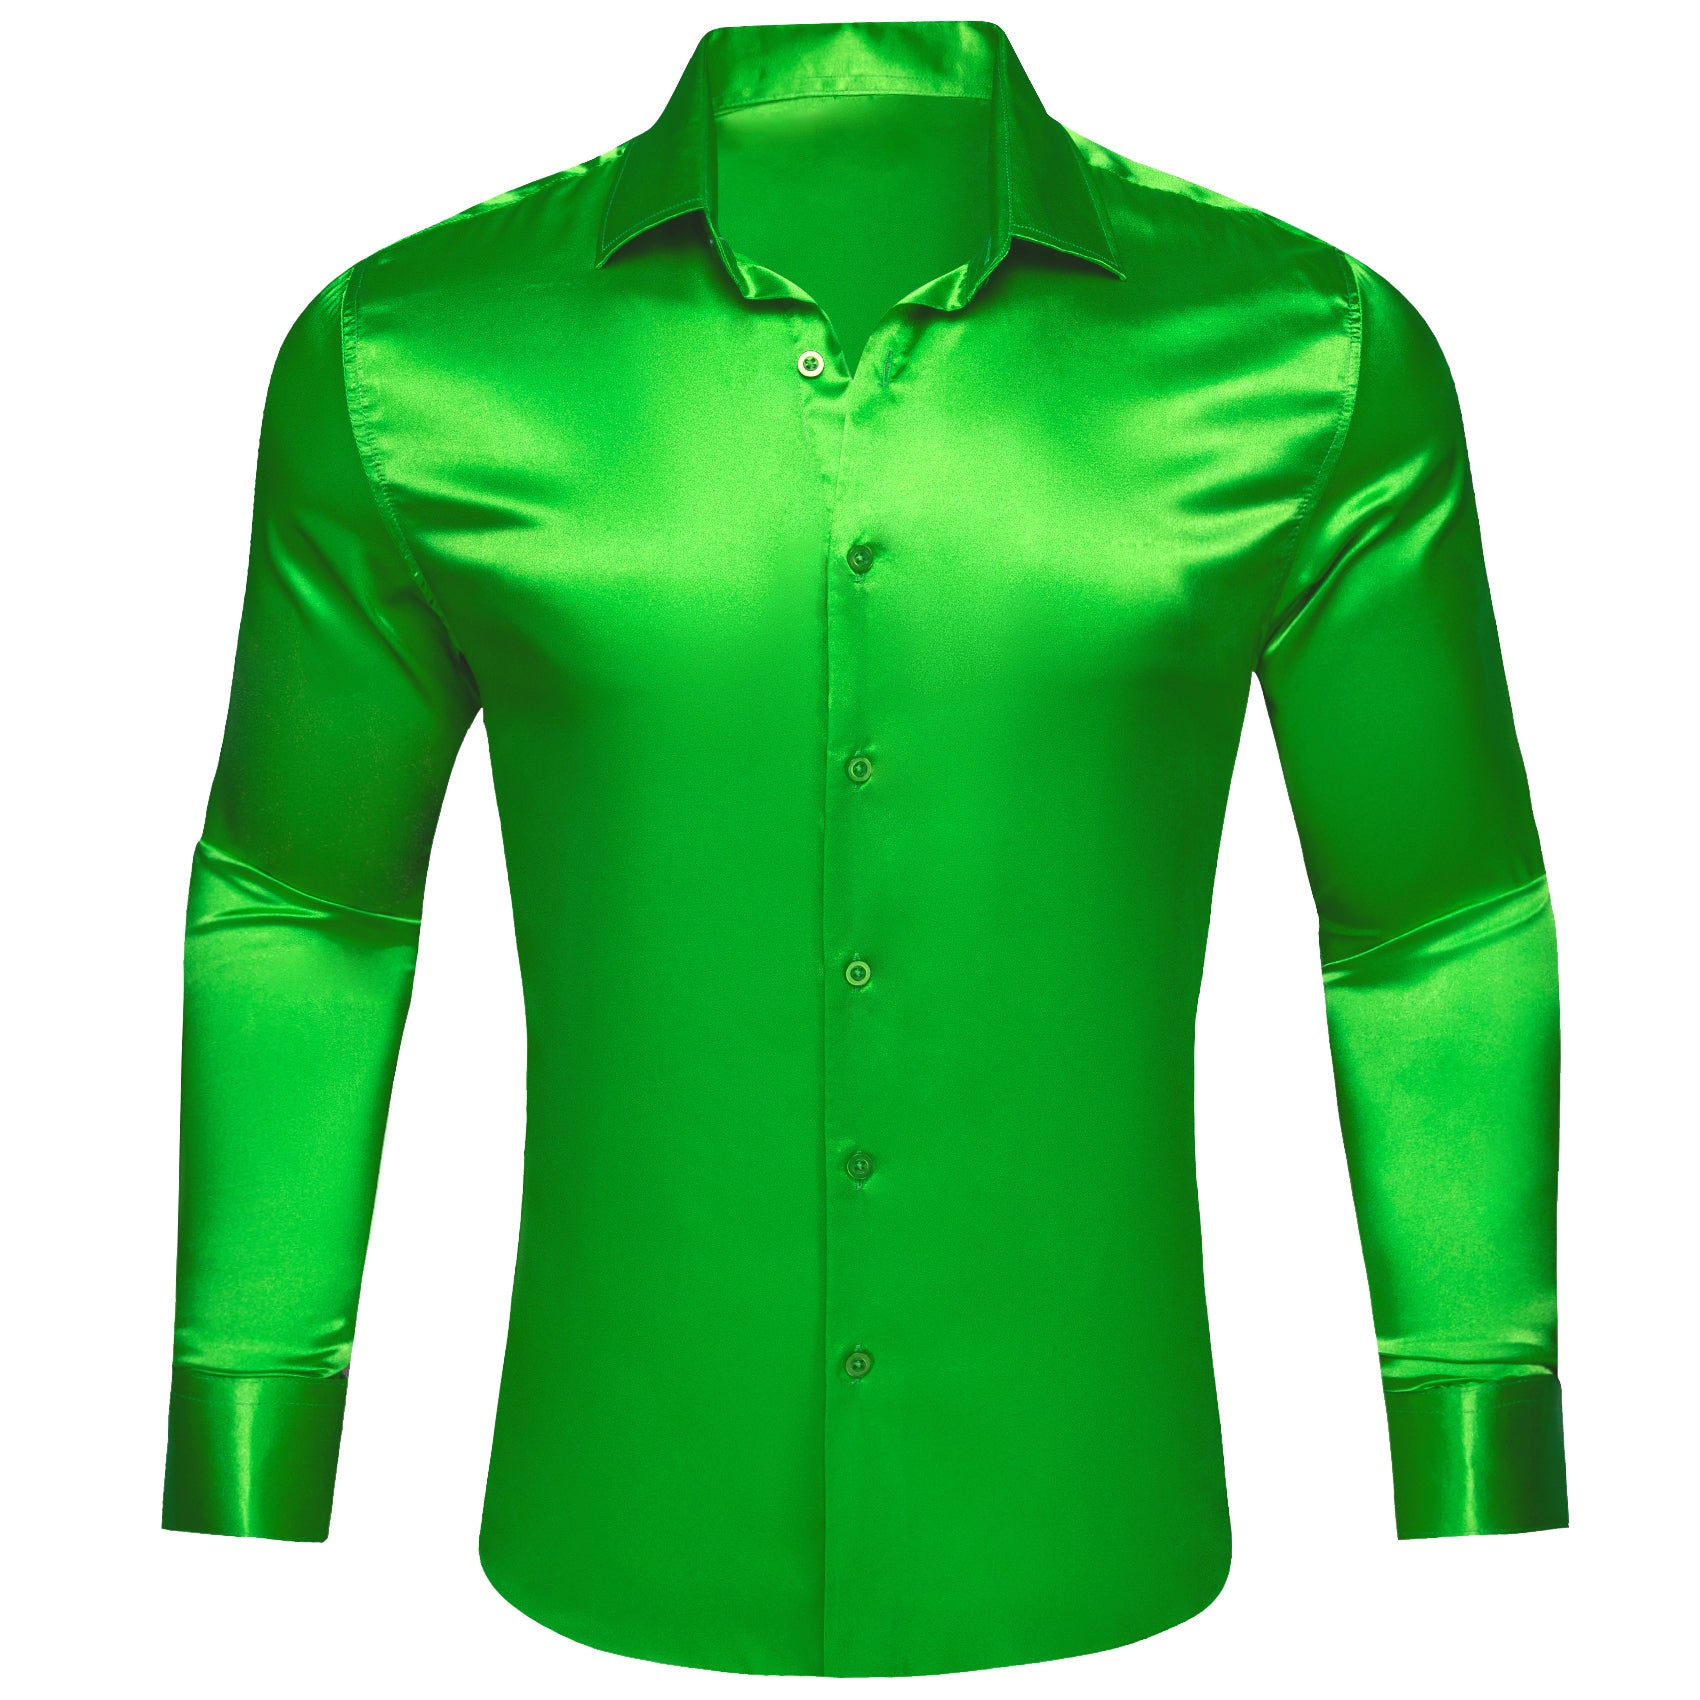 Barry.wang Cobalt Green Solid Silk Shirt